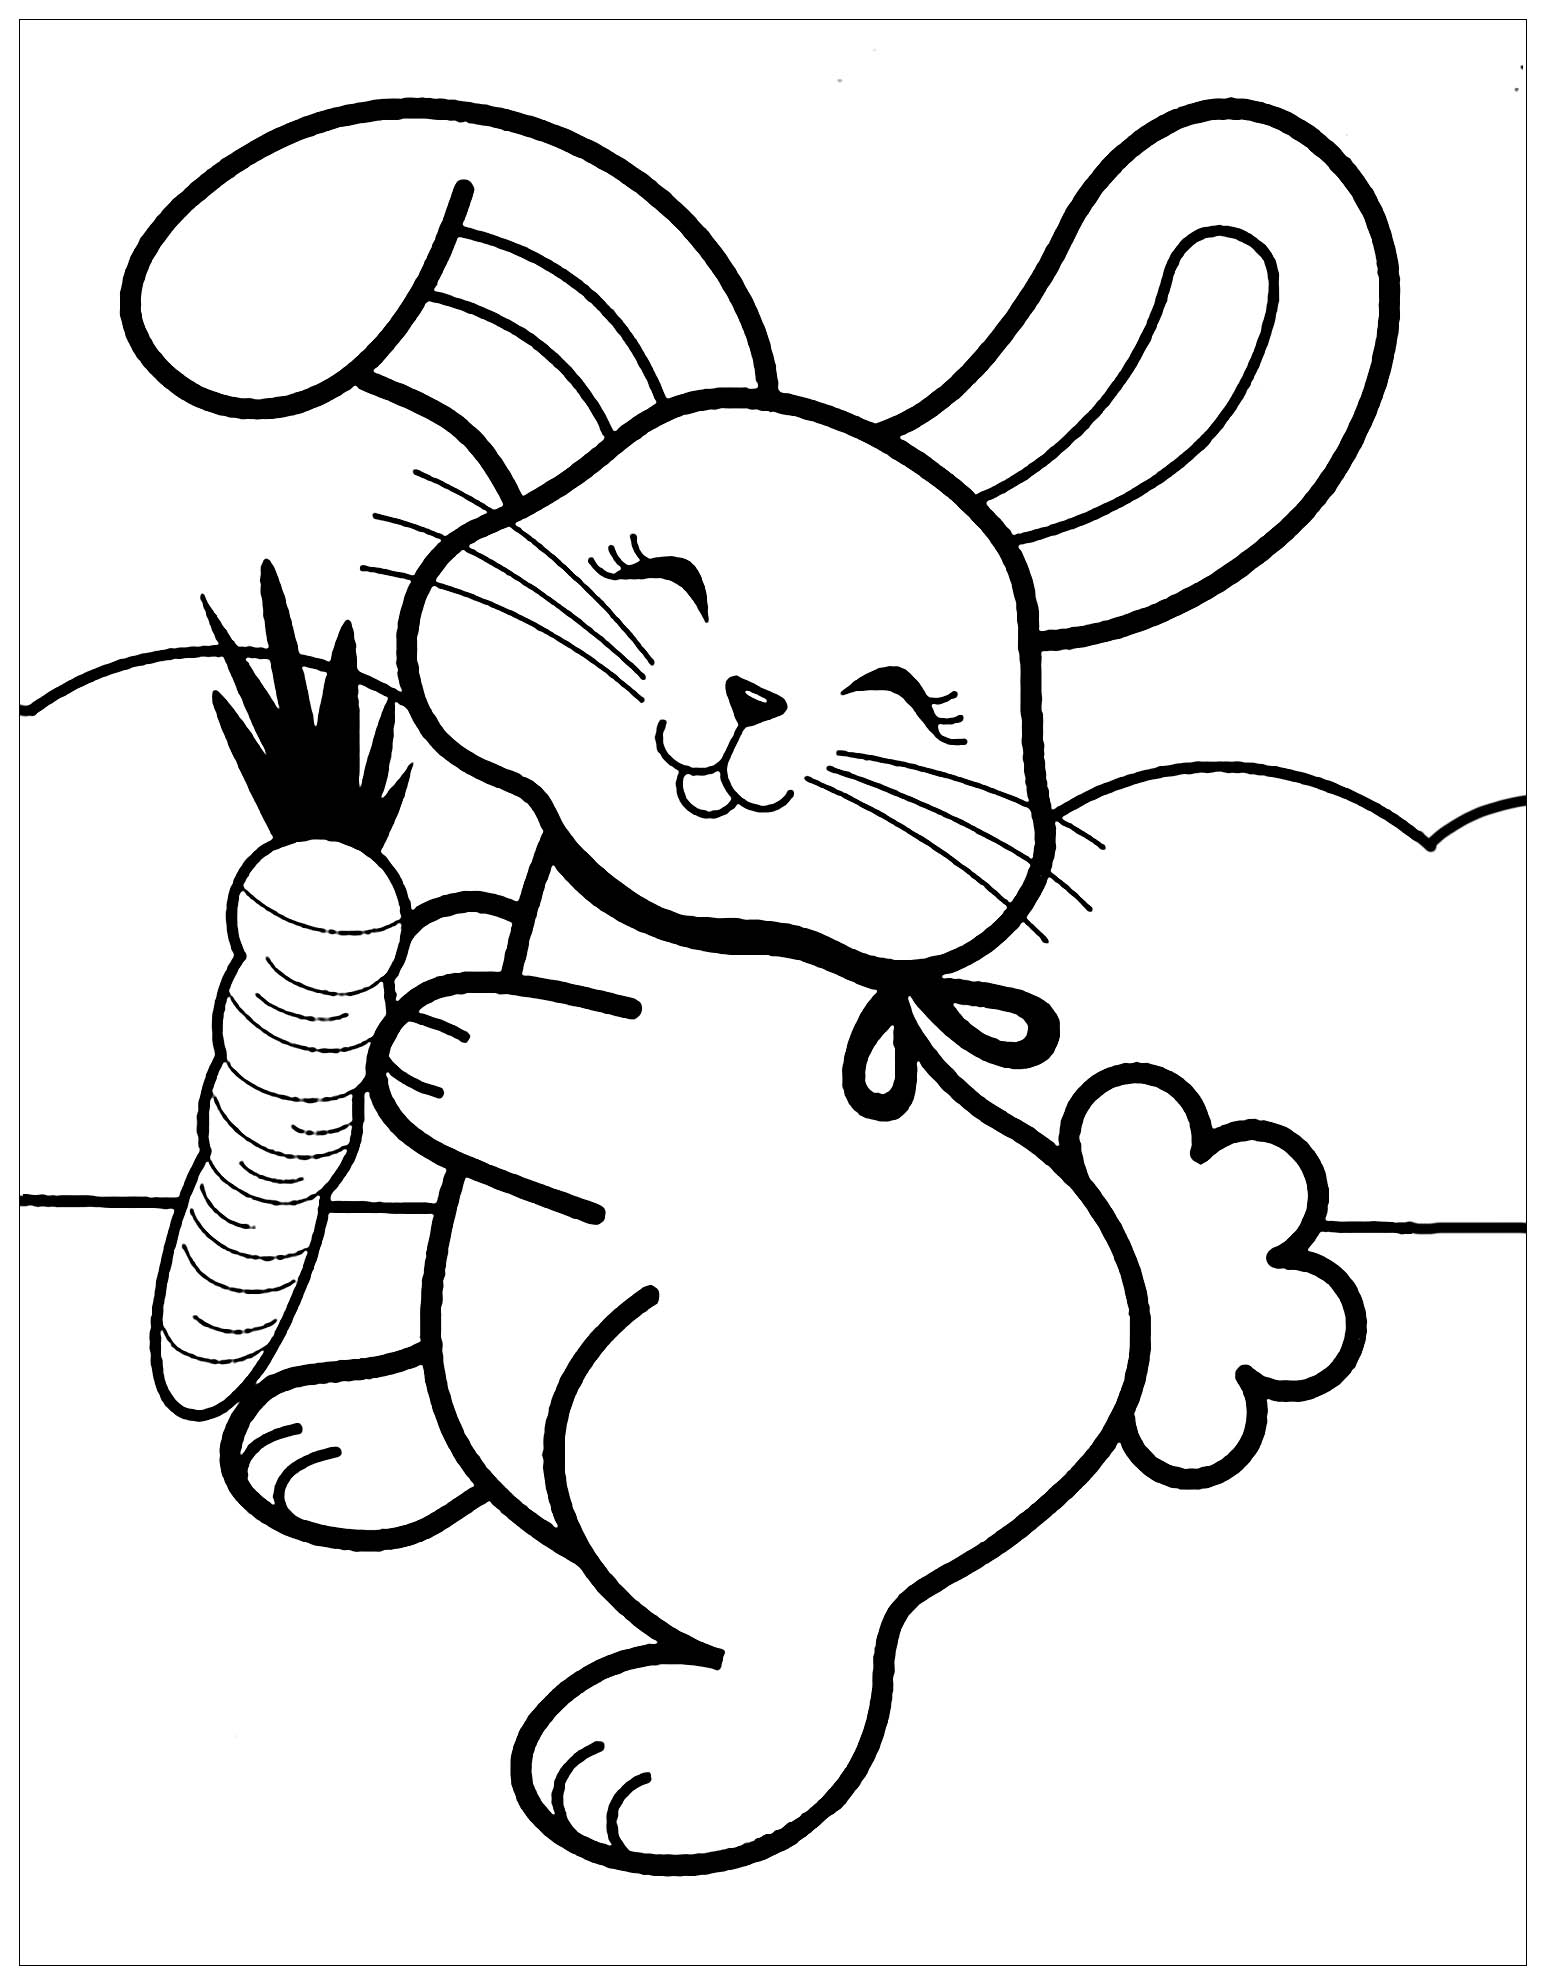 Lapin à Colorier Et Imprimer lapin de paques à colorier et imprimer ~ Galerie de couleurs d'images